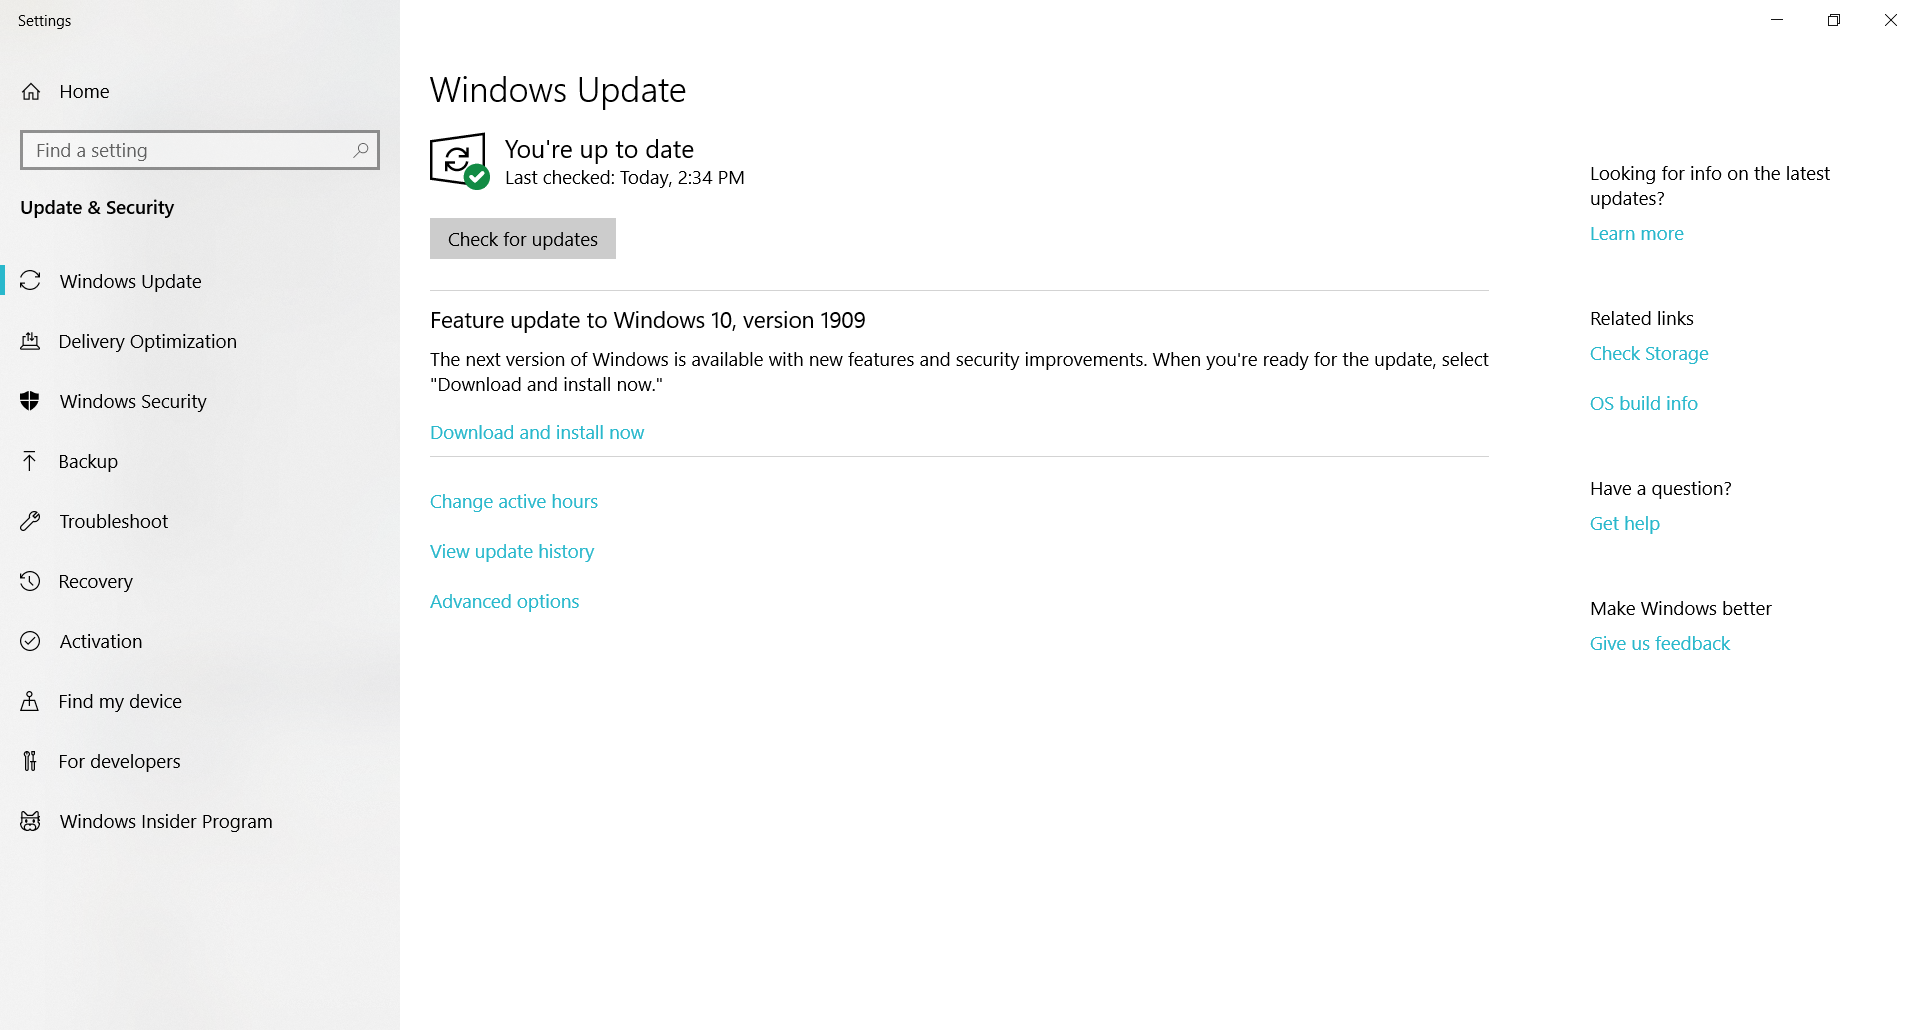 Windows now can not show "Features update to windows 10 1903", even using windows update... a21206d0-159e-412f-b267-b9d8d0e29e06?upload=true.png